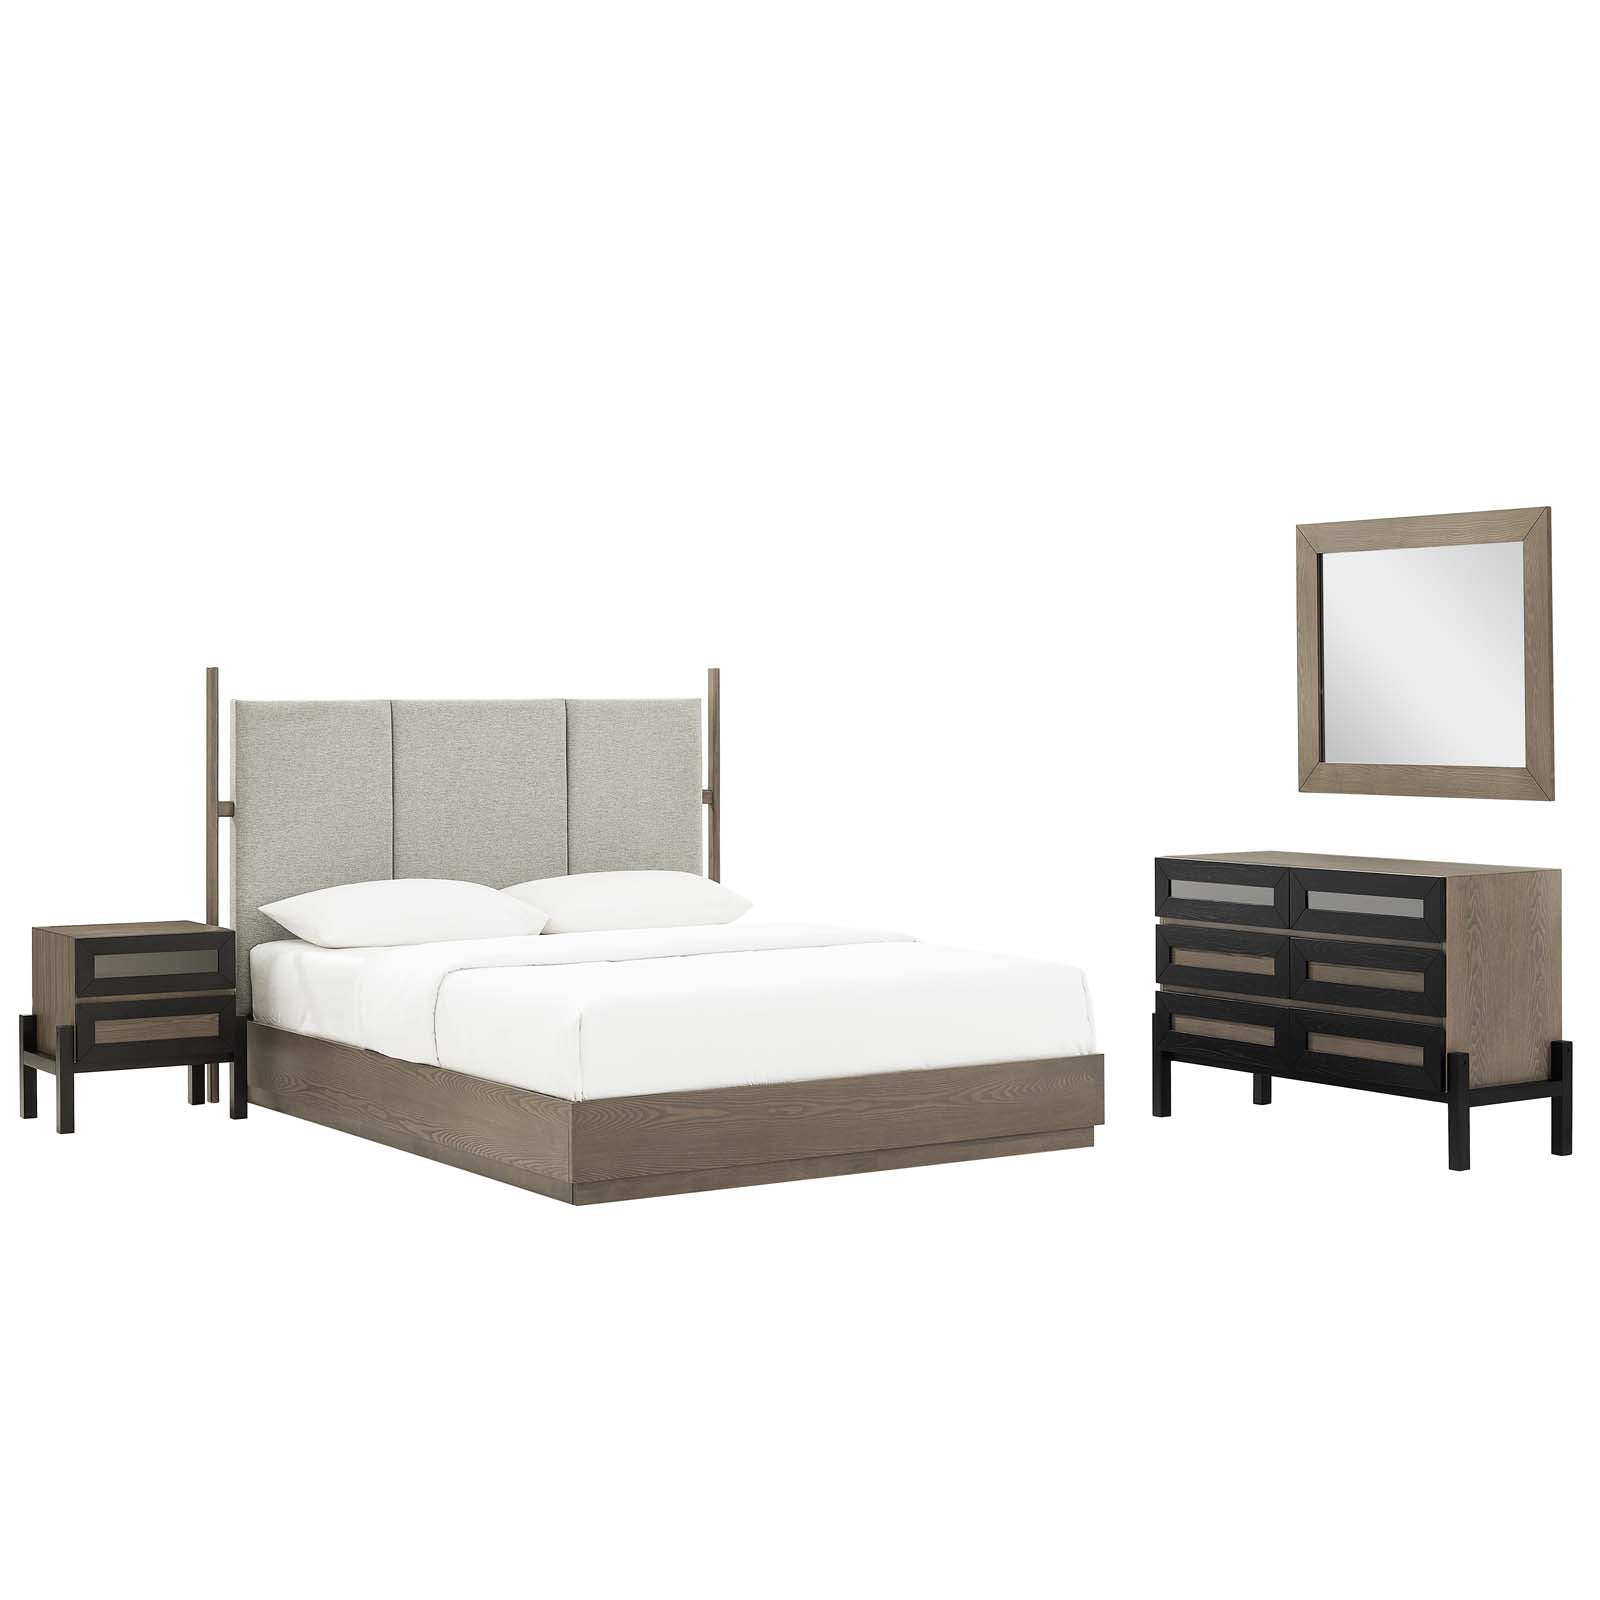 Merritt 4 Piece Upholstered Bedroom Set - East Shore Modern Home Furnishings